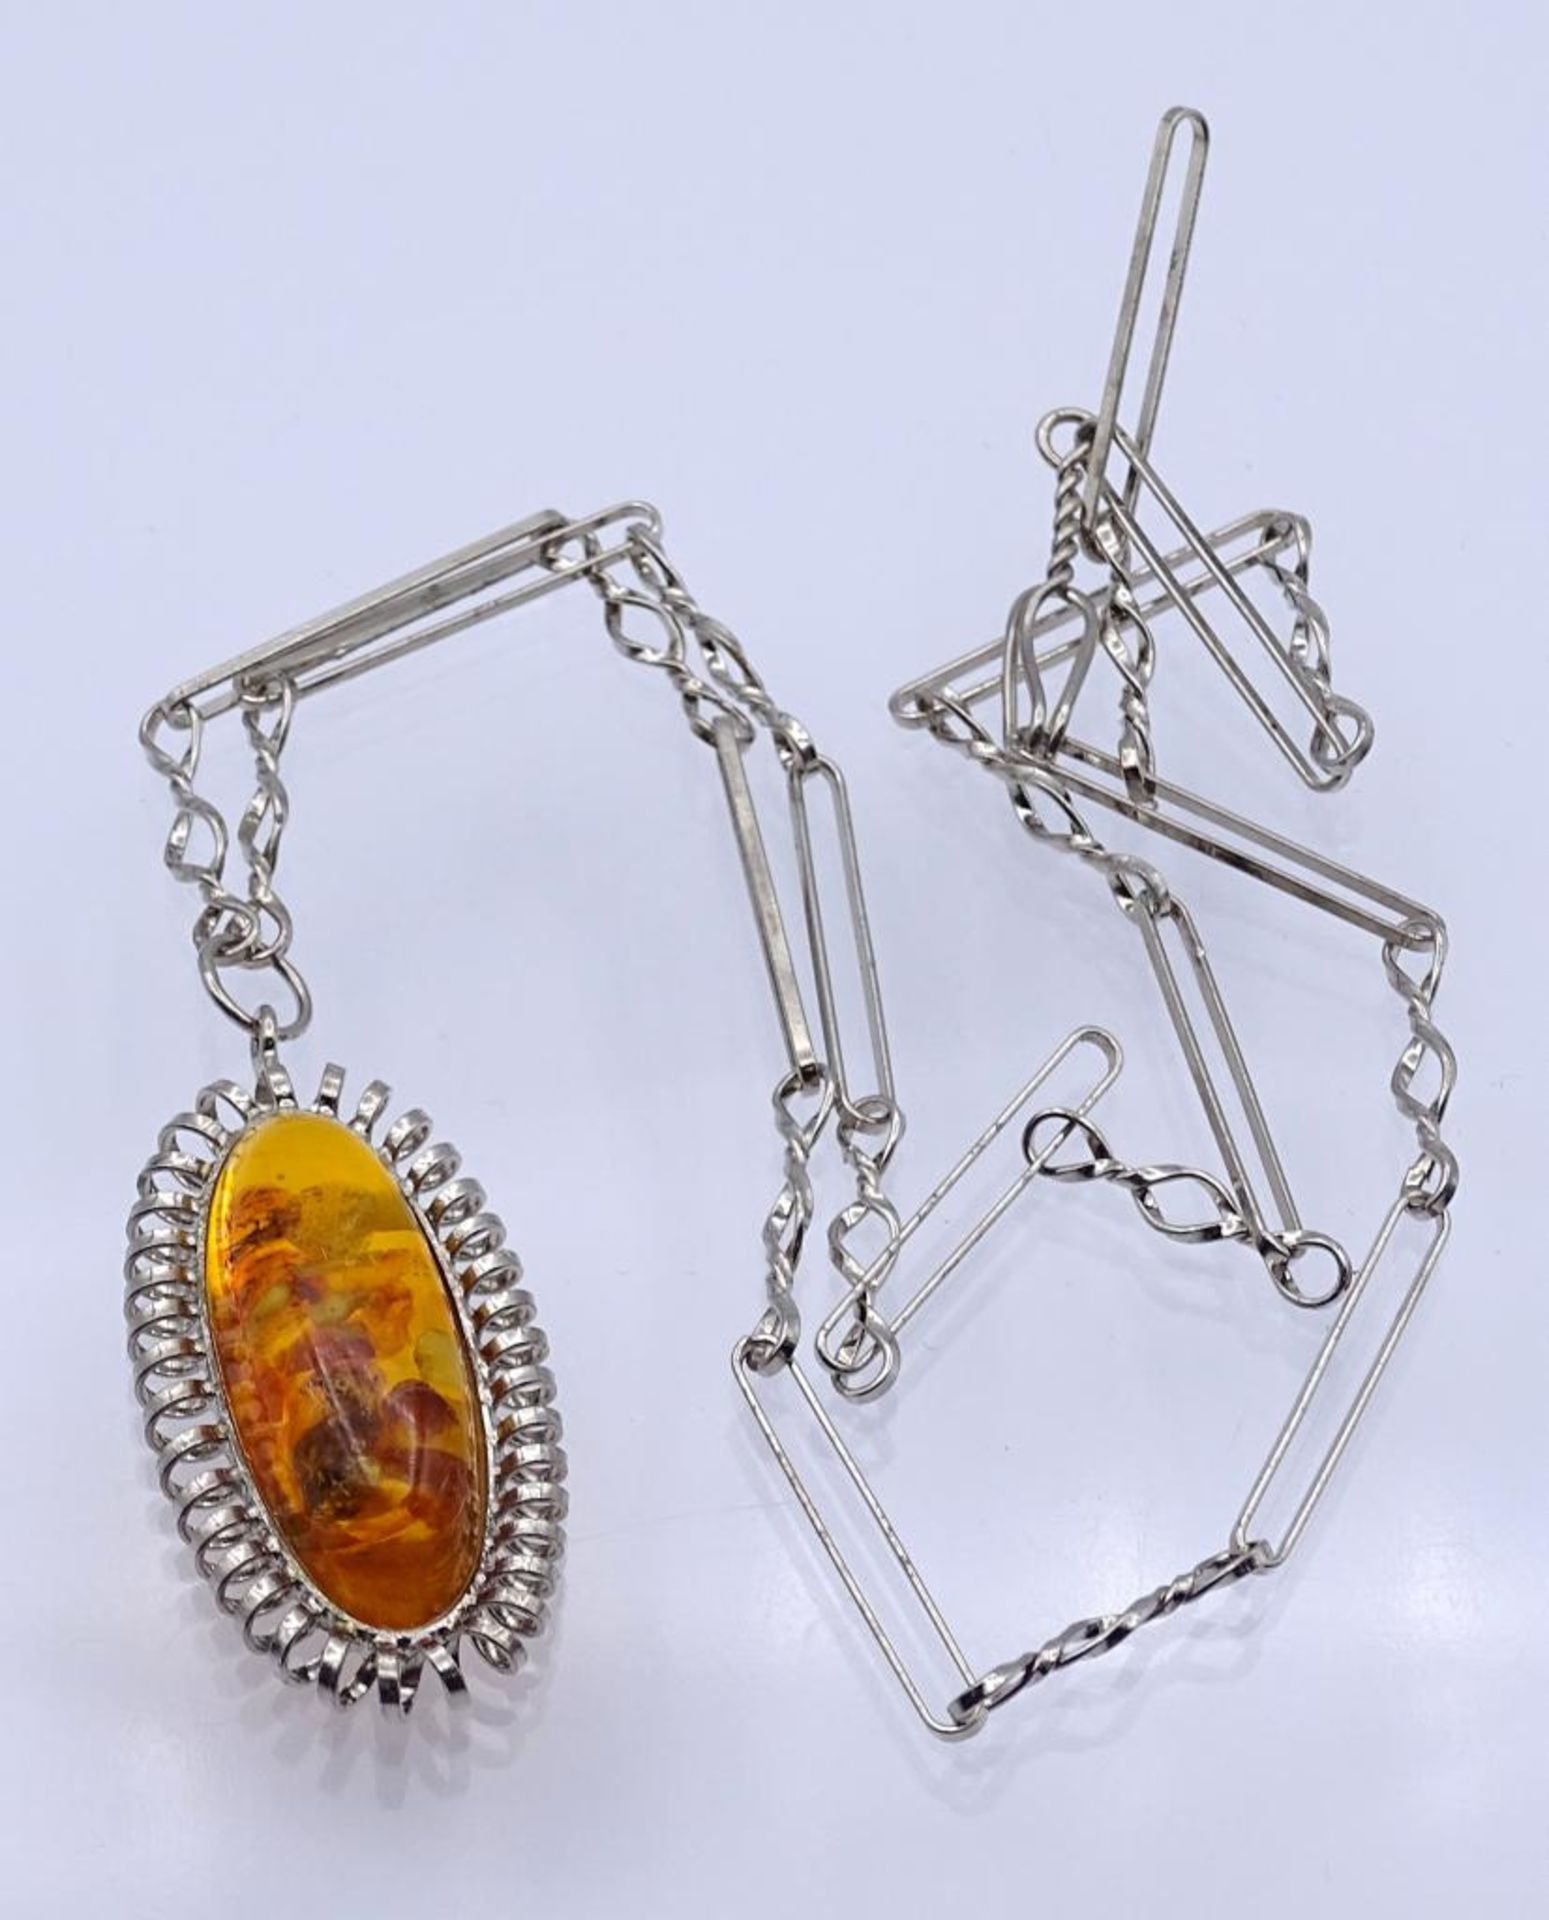 Halskette mit Bernstein Anhänger, tolle gedrehte Elemente, versilbert,L- 46cm